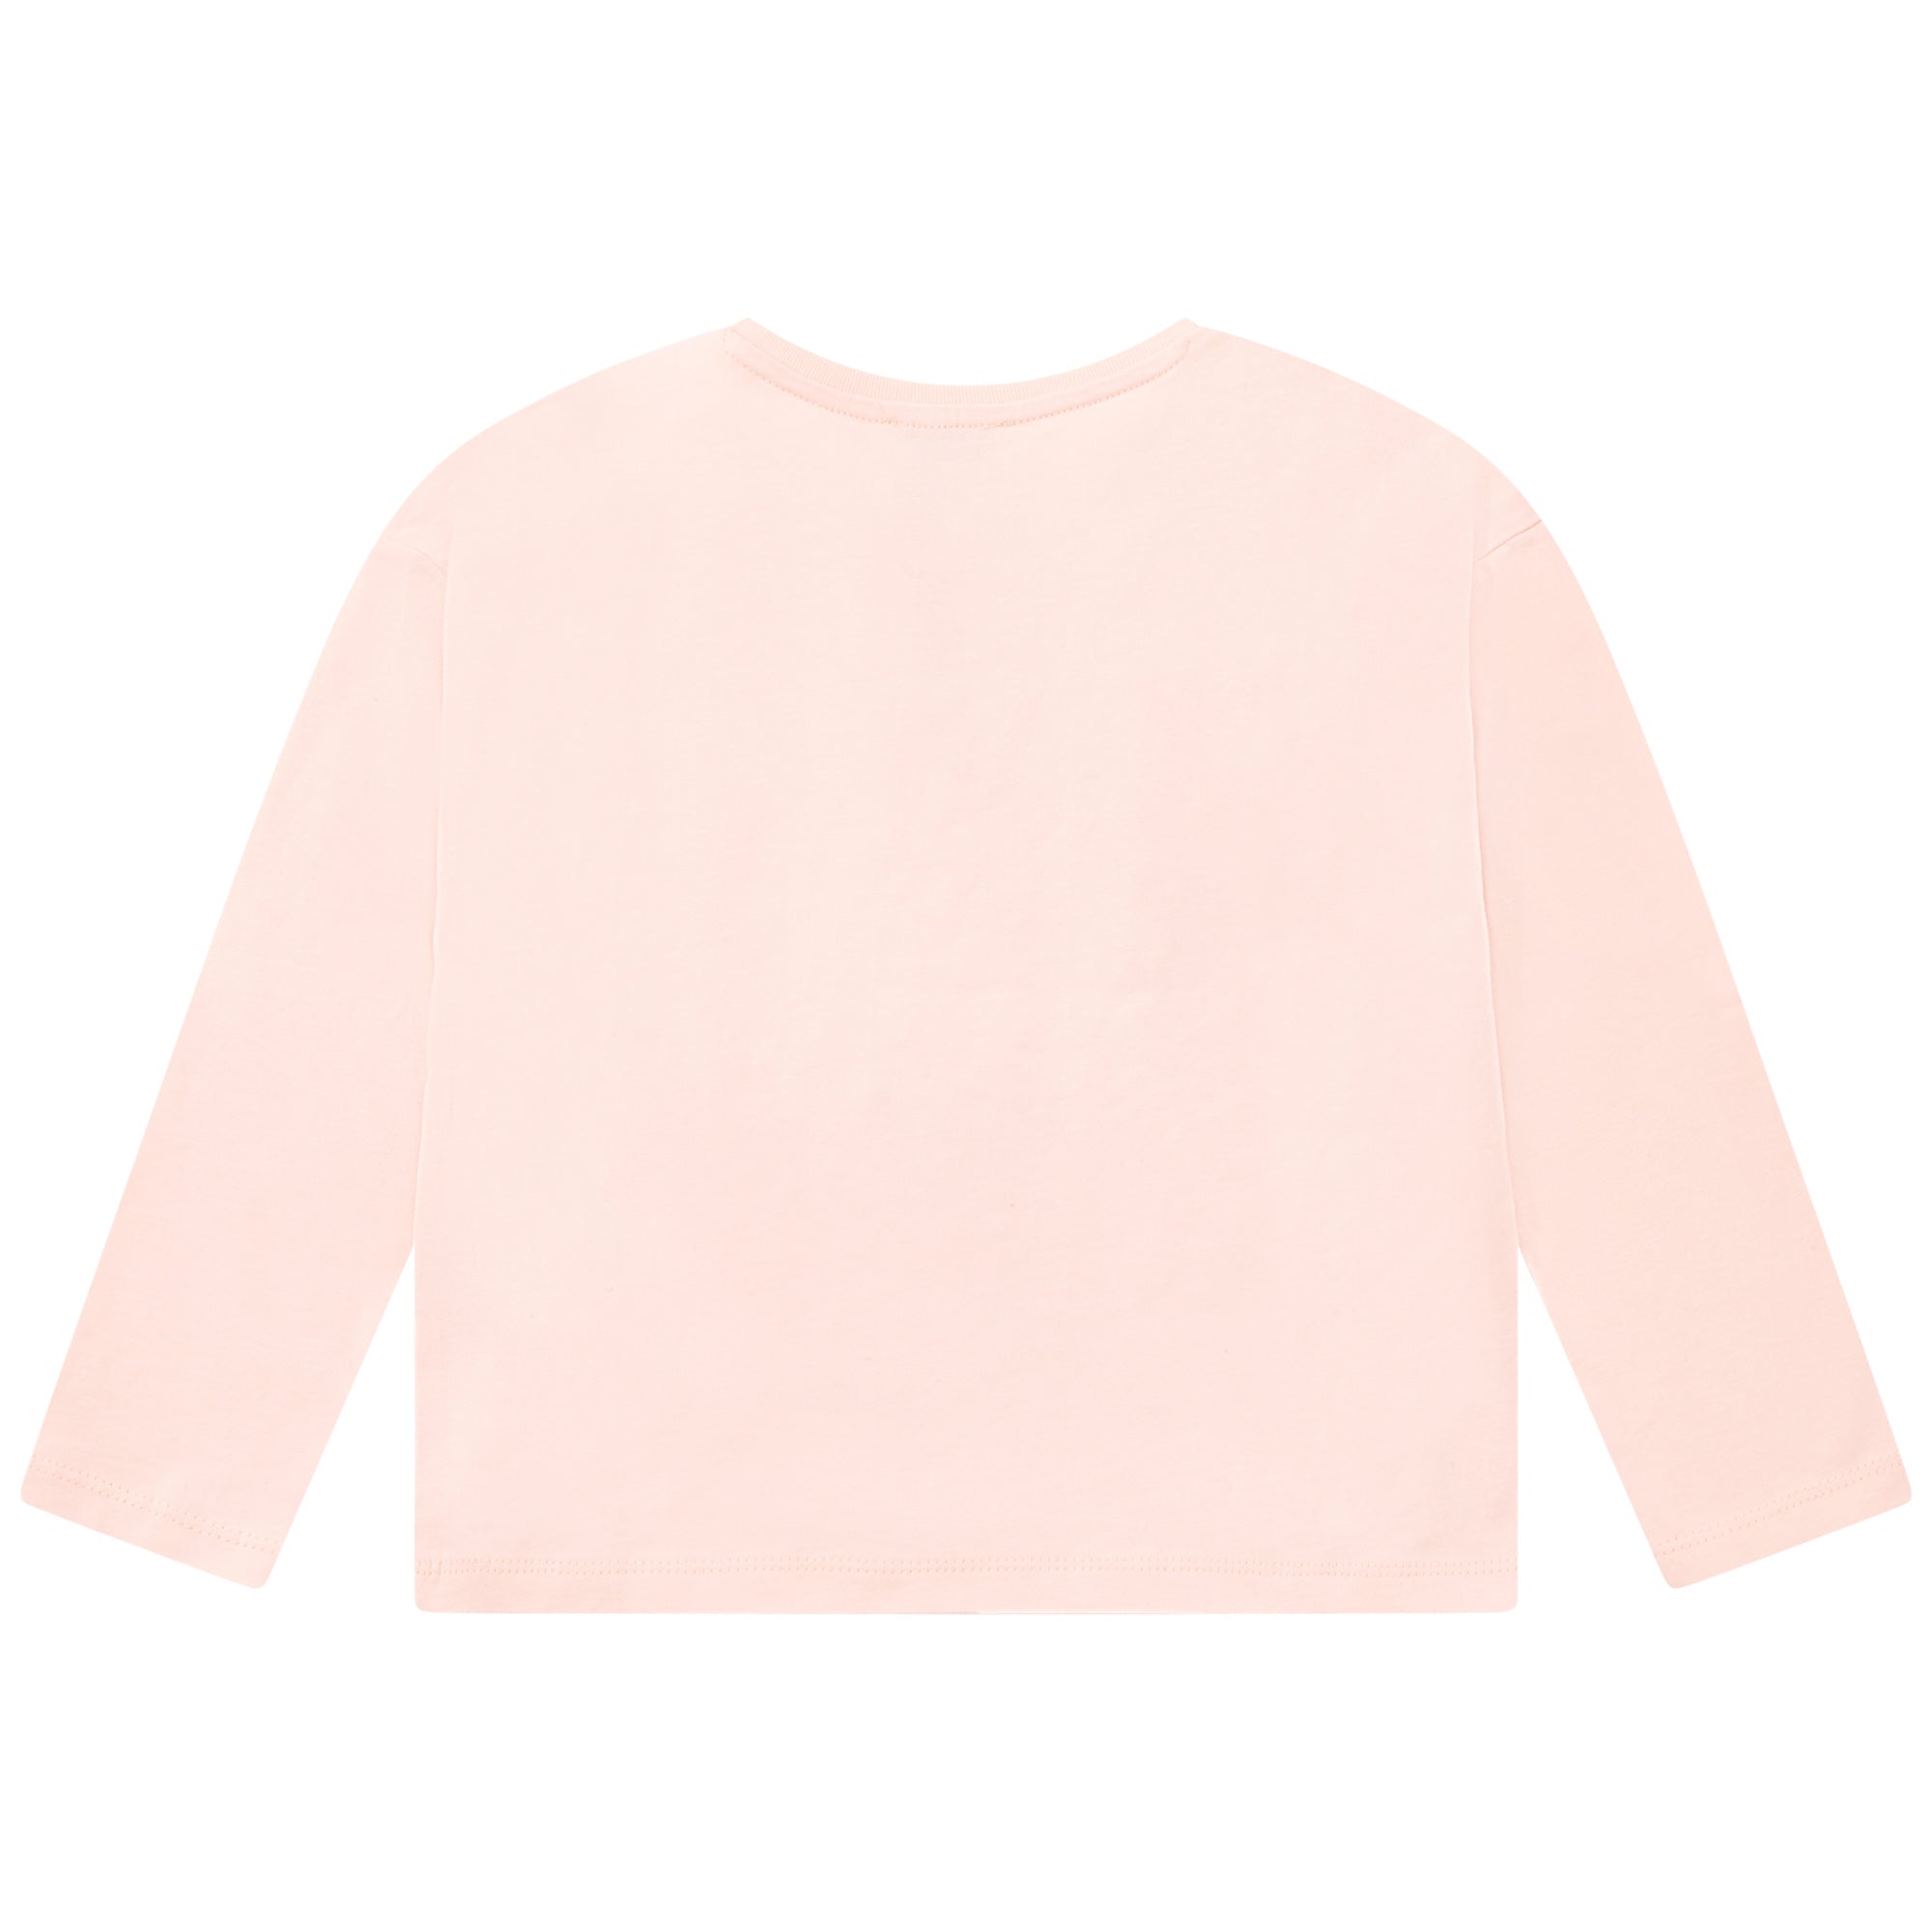 Girls Pink Tiger Cotton T-Shirt